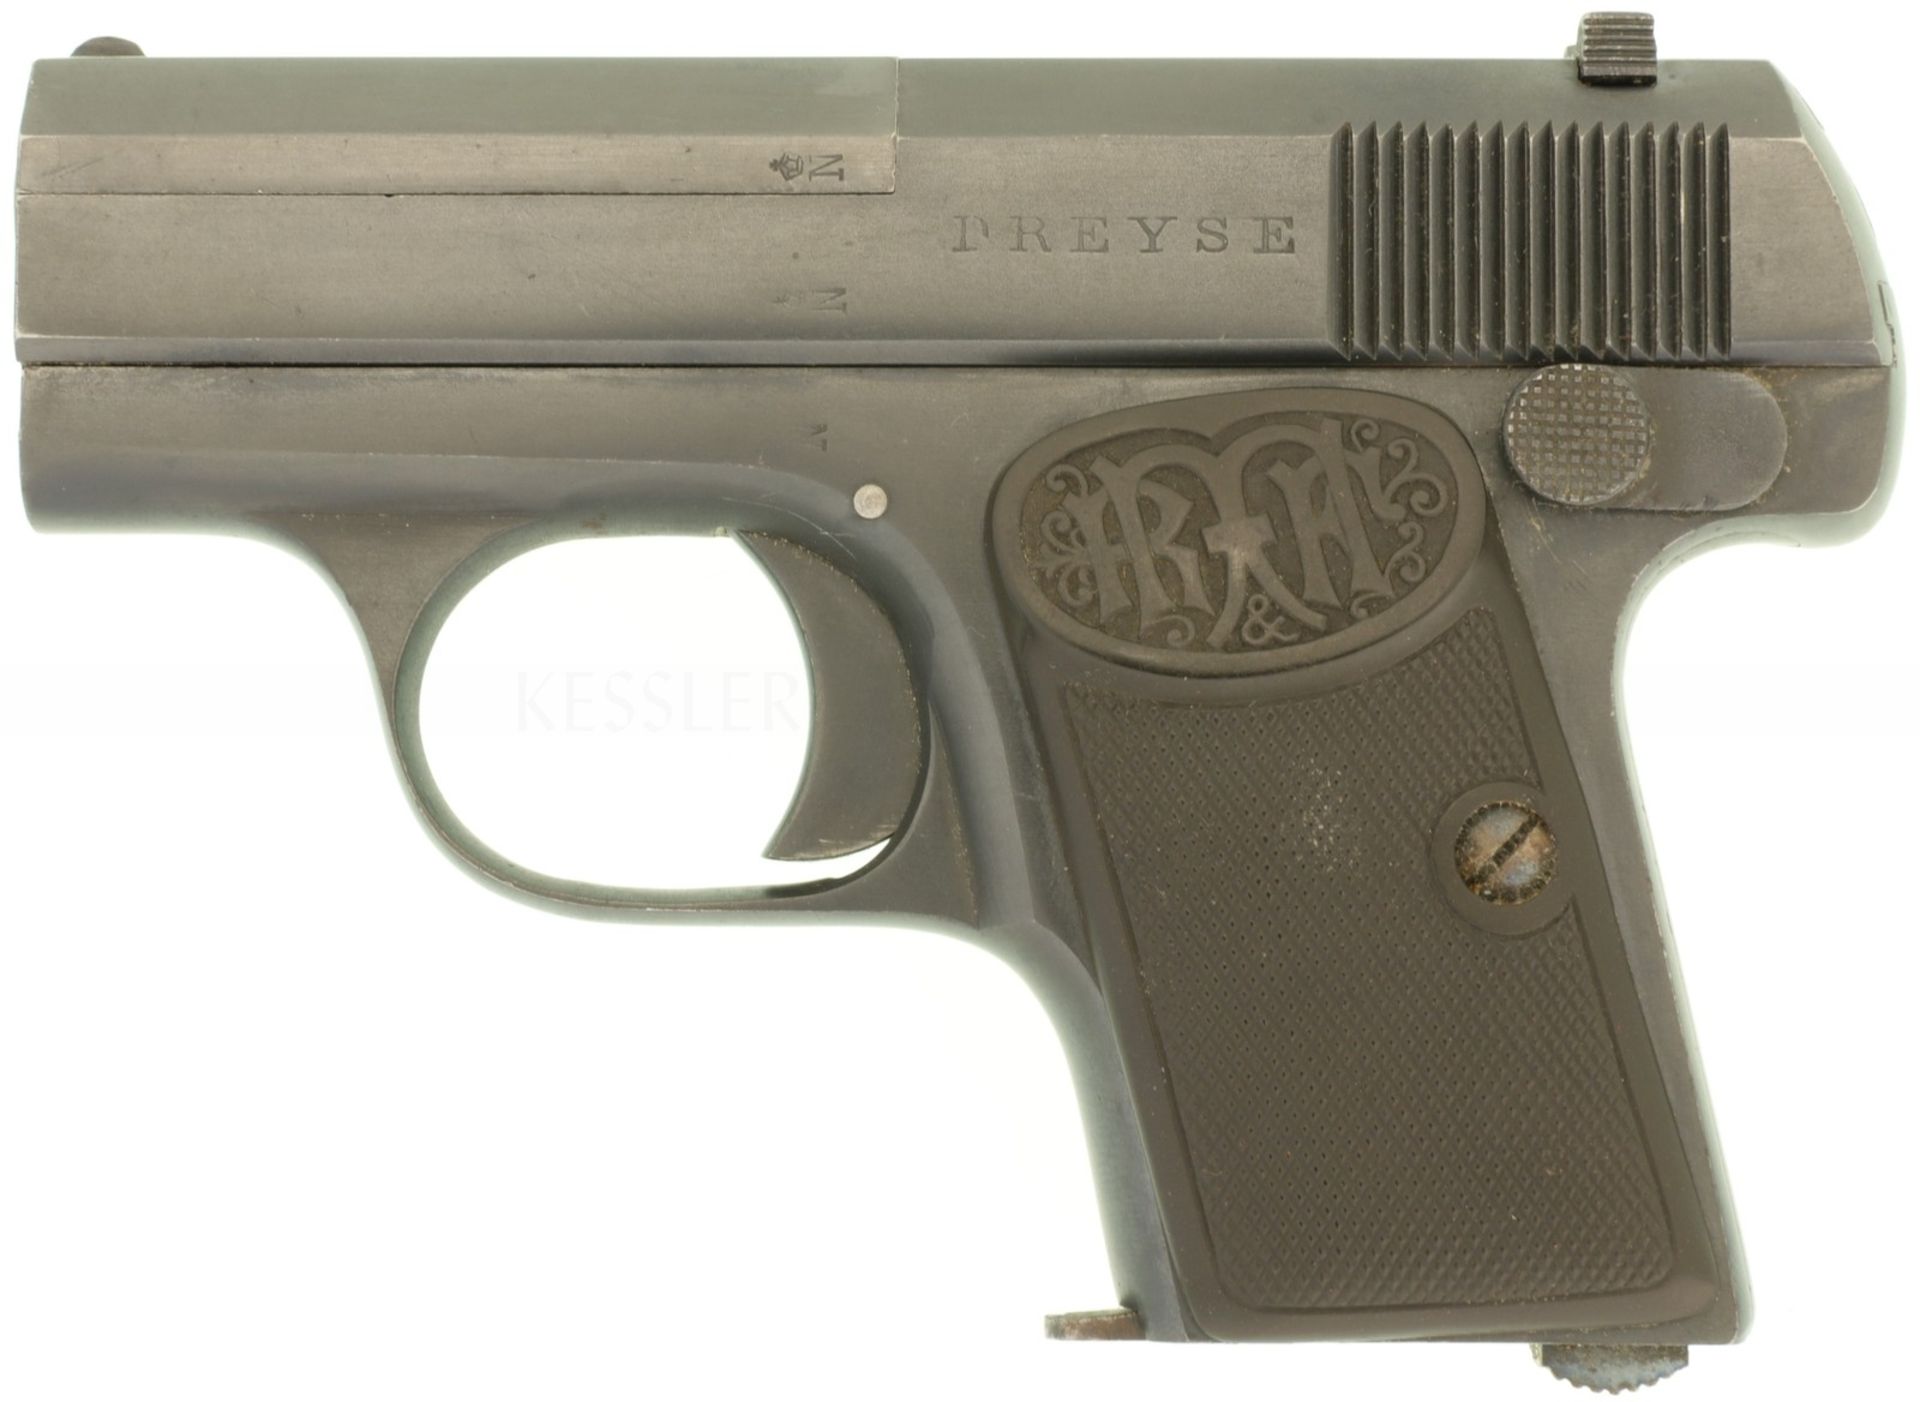 Taschenpistole, Dreyse, Kal. 6.35mmBr